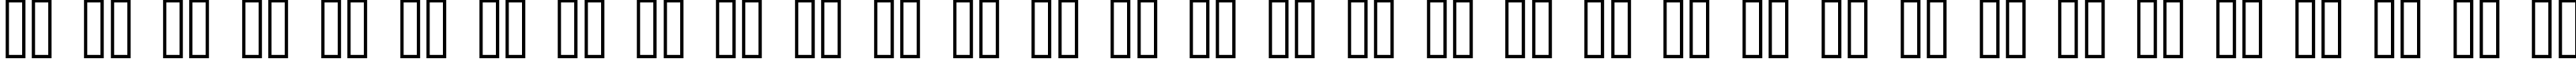 Пример написания русского алфавита шрифтом standard 07_51